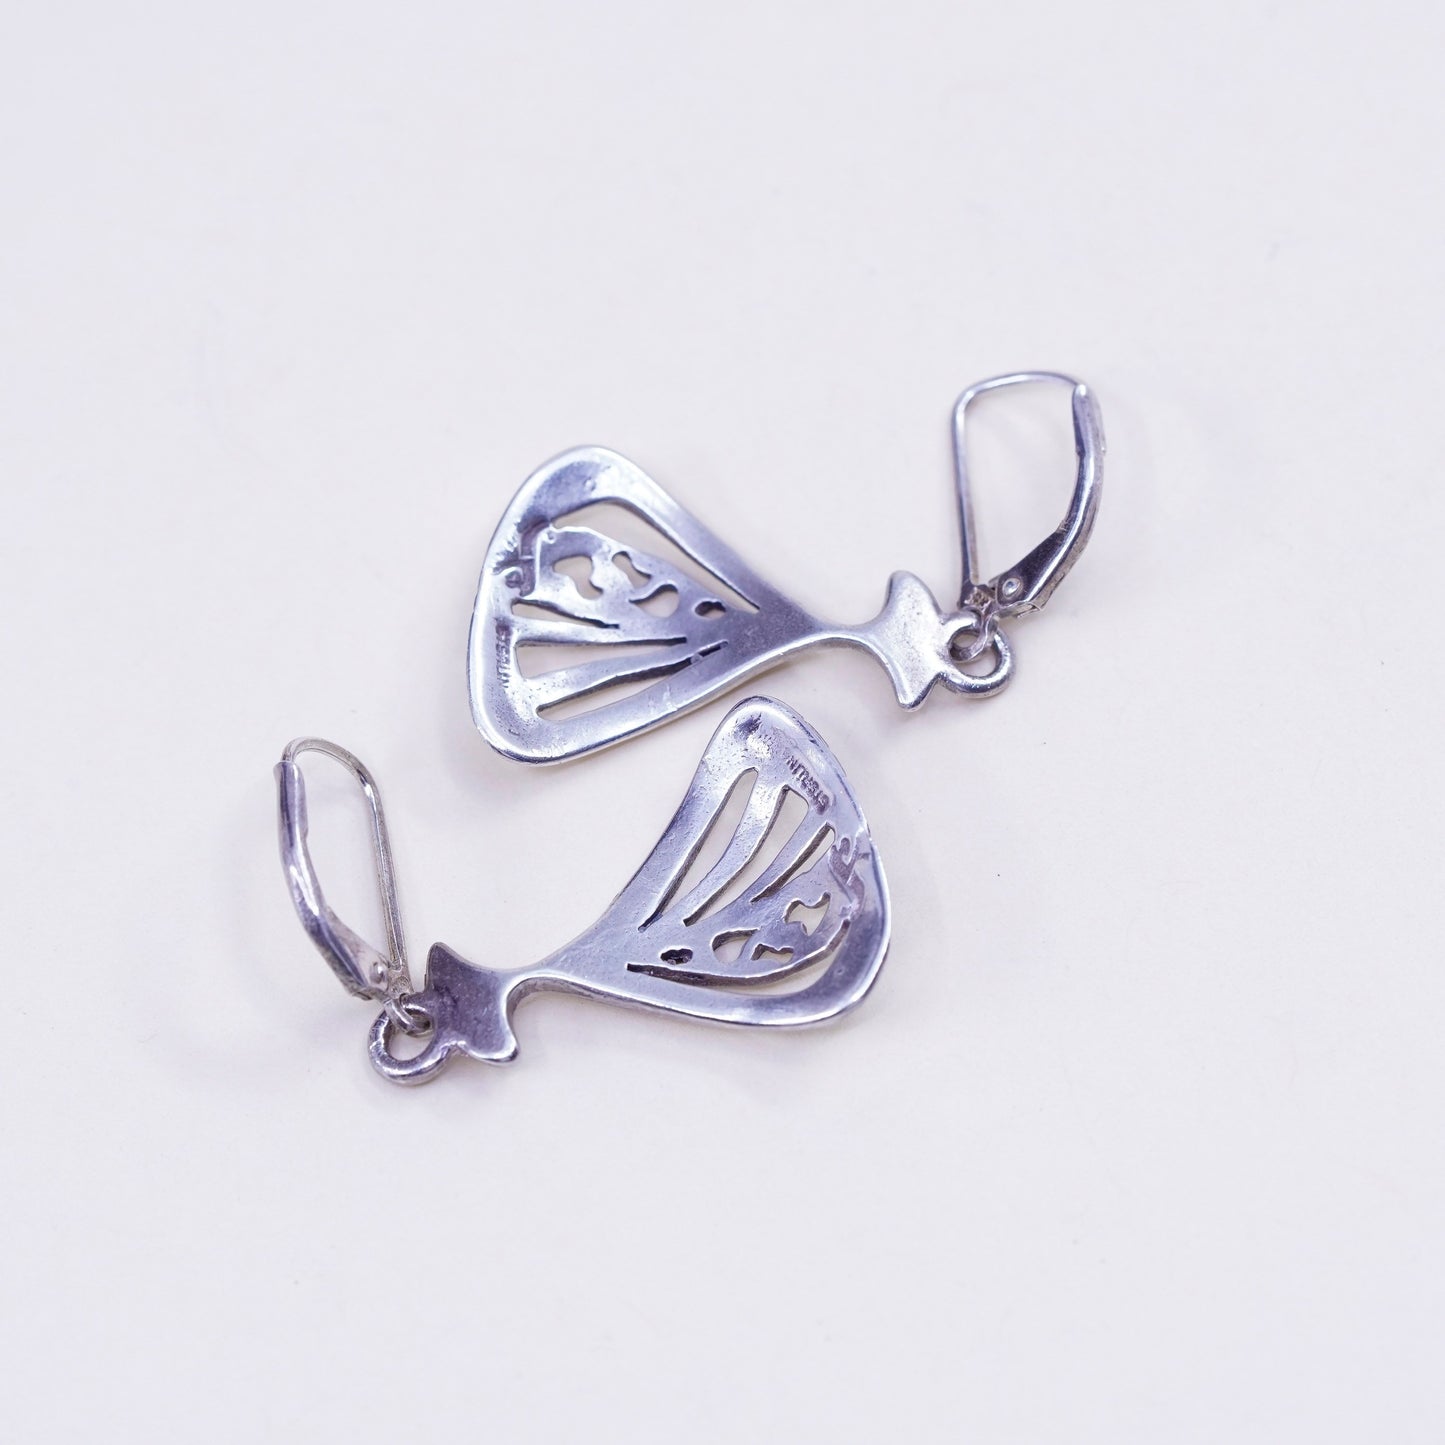 Vintage sterling silver handmade earrings, filigree 925 shell